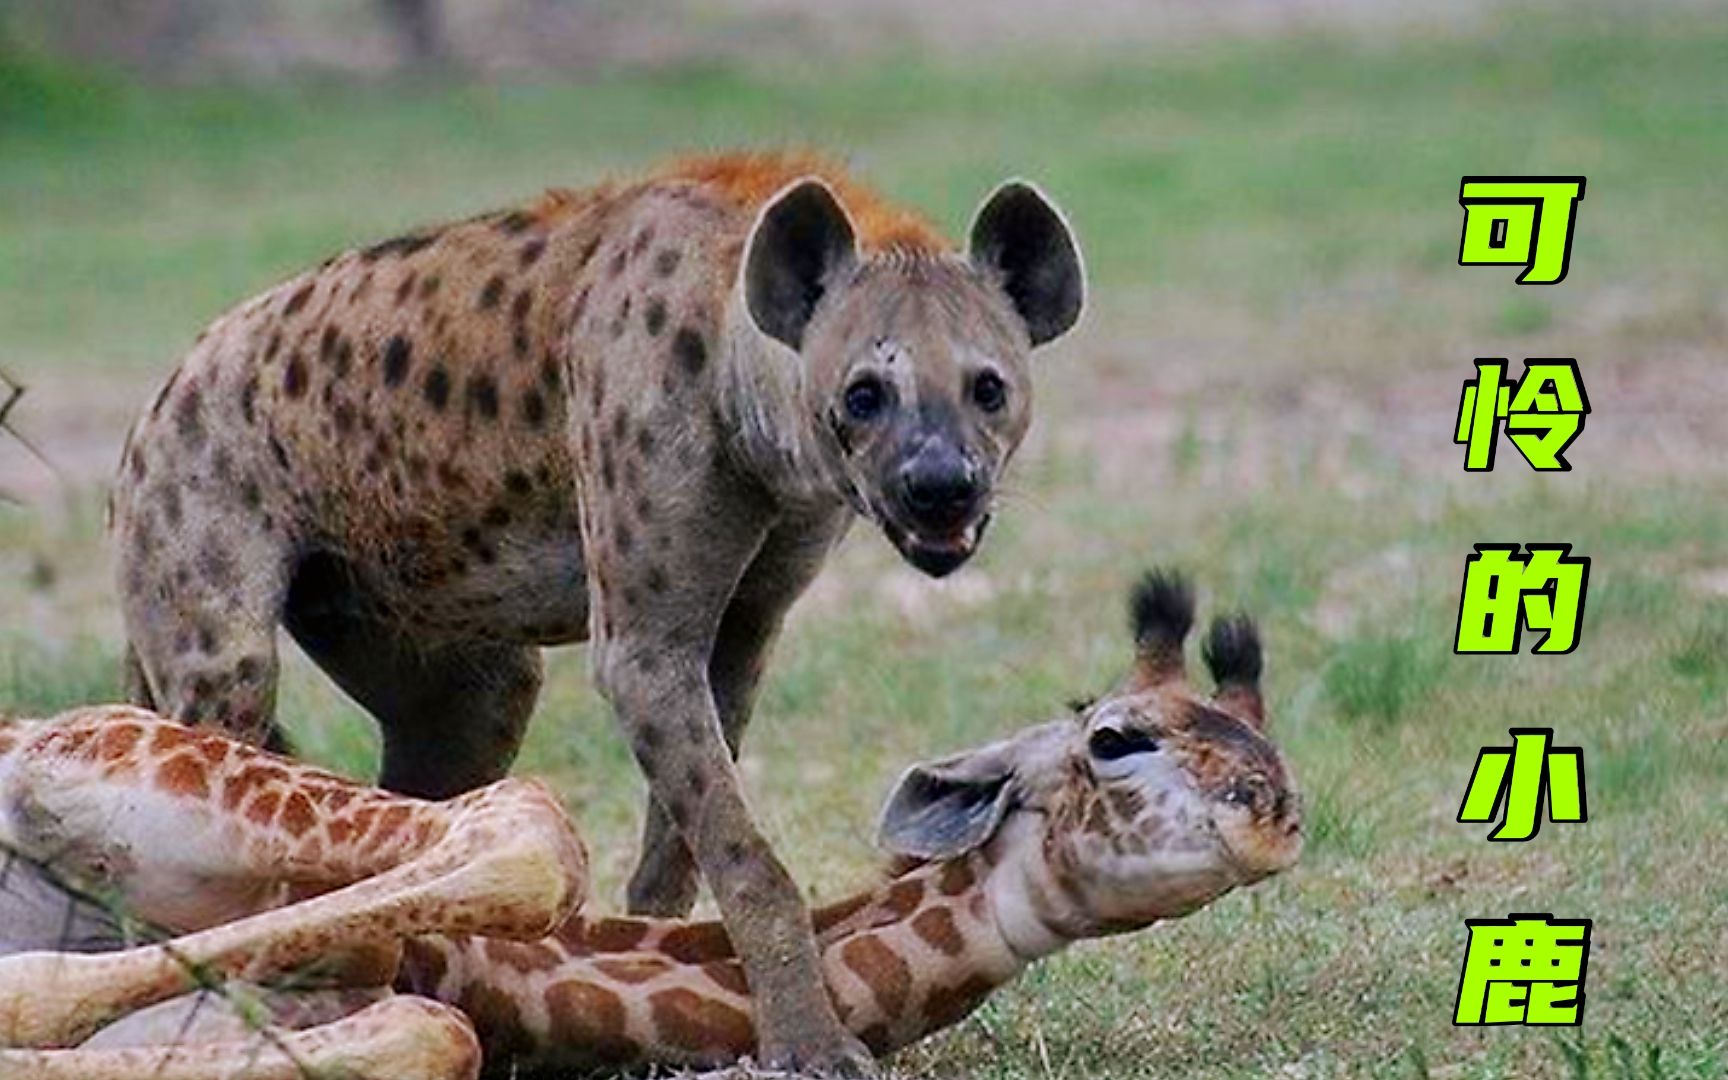 鬣狗盯上独自分娩的长颈鹿,小鹿刚出生就被残害,看着真让人难受